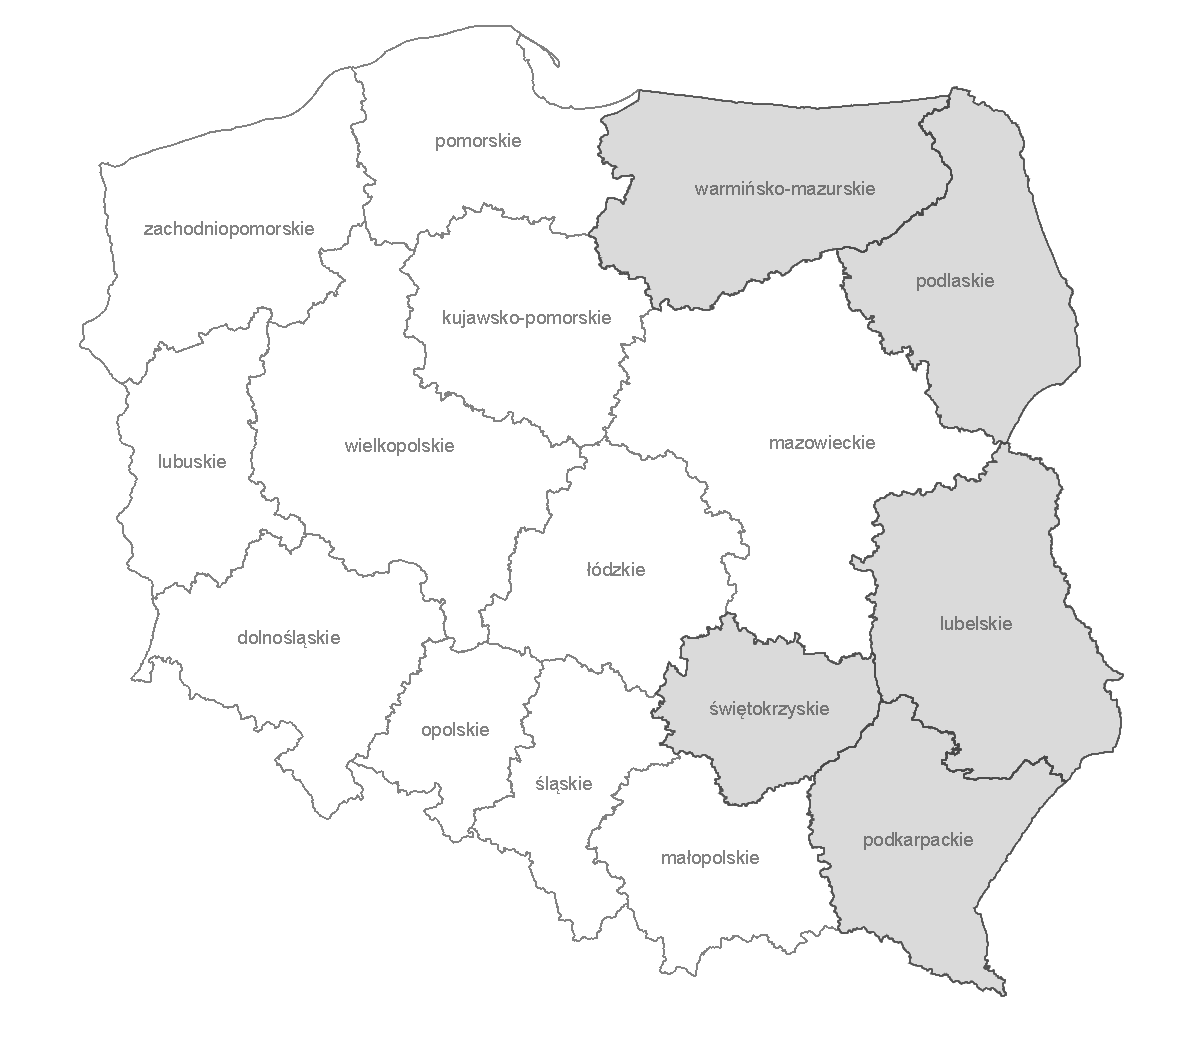 274 GOSPODARKA REGIONALNA I MIĘDZYNARODOWA Rysunek 1. Mapa Polski z podziałem na Polskę Wschodnią z uwzględnieniem województw Źródło: www.geo.stat.gov.pl [dostęp 20.04.2015].